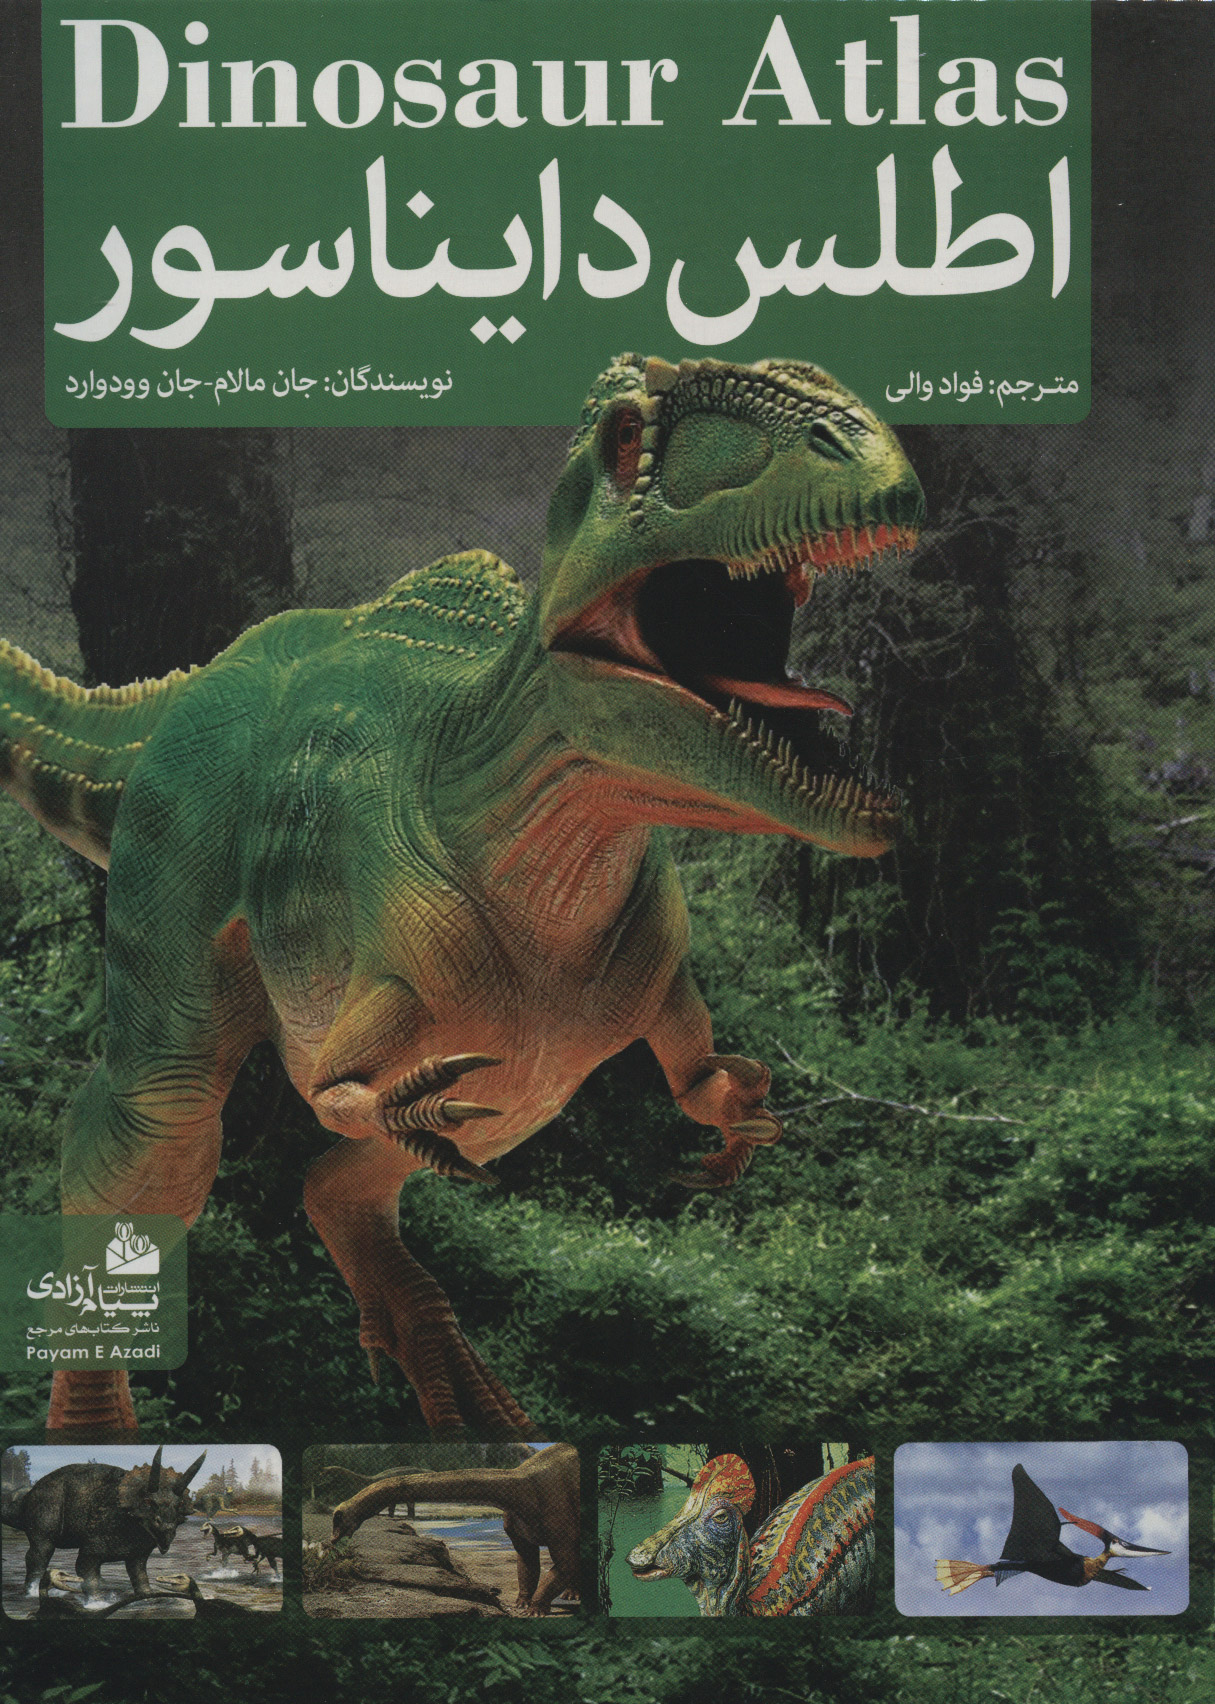  کتاب اطلس دایناسور